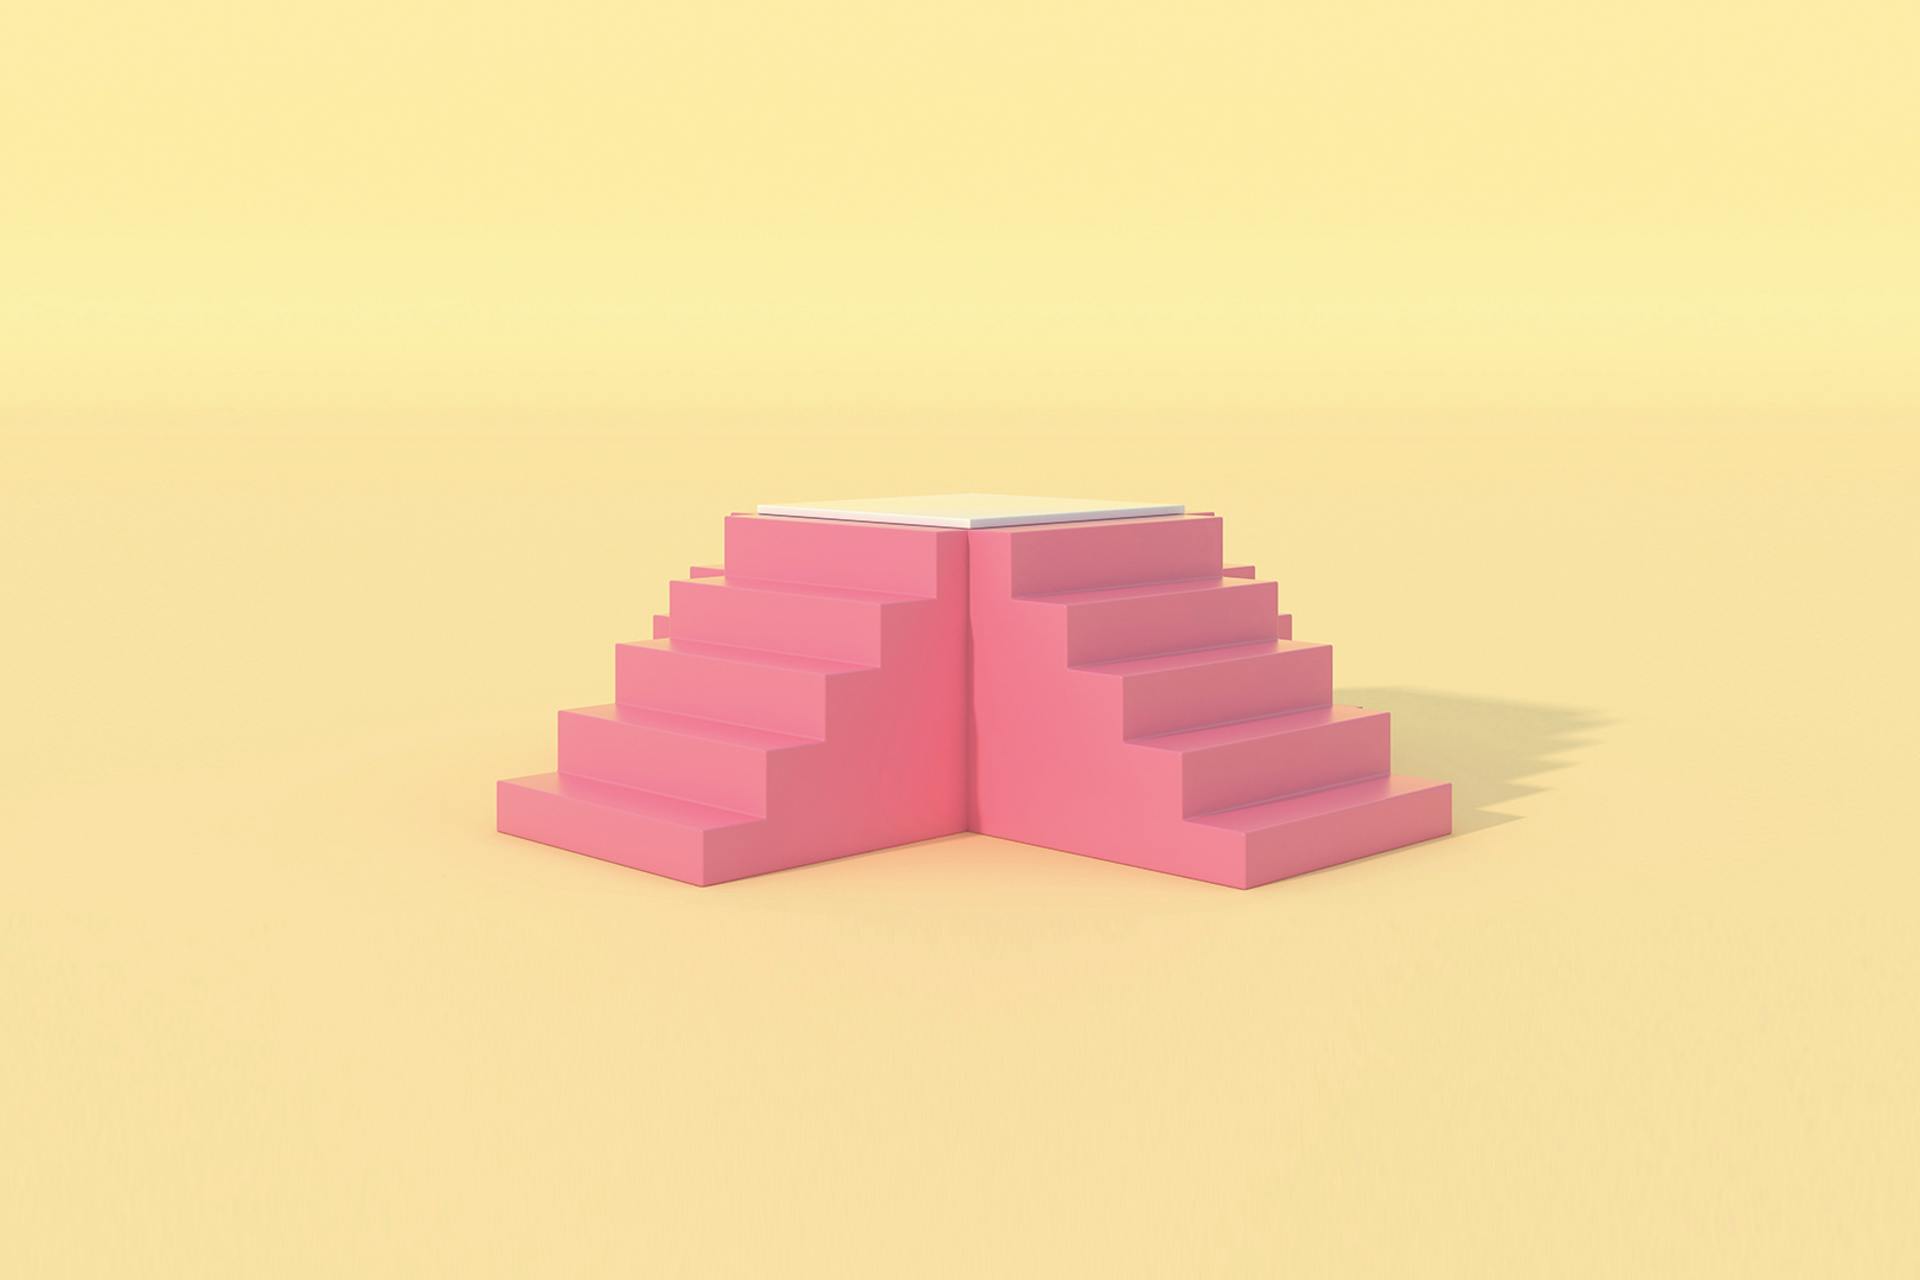 Deux blocs de marches d'escalier en 3D roses, sur fond jaune 